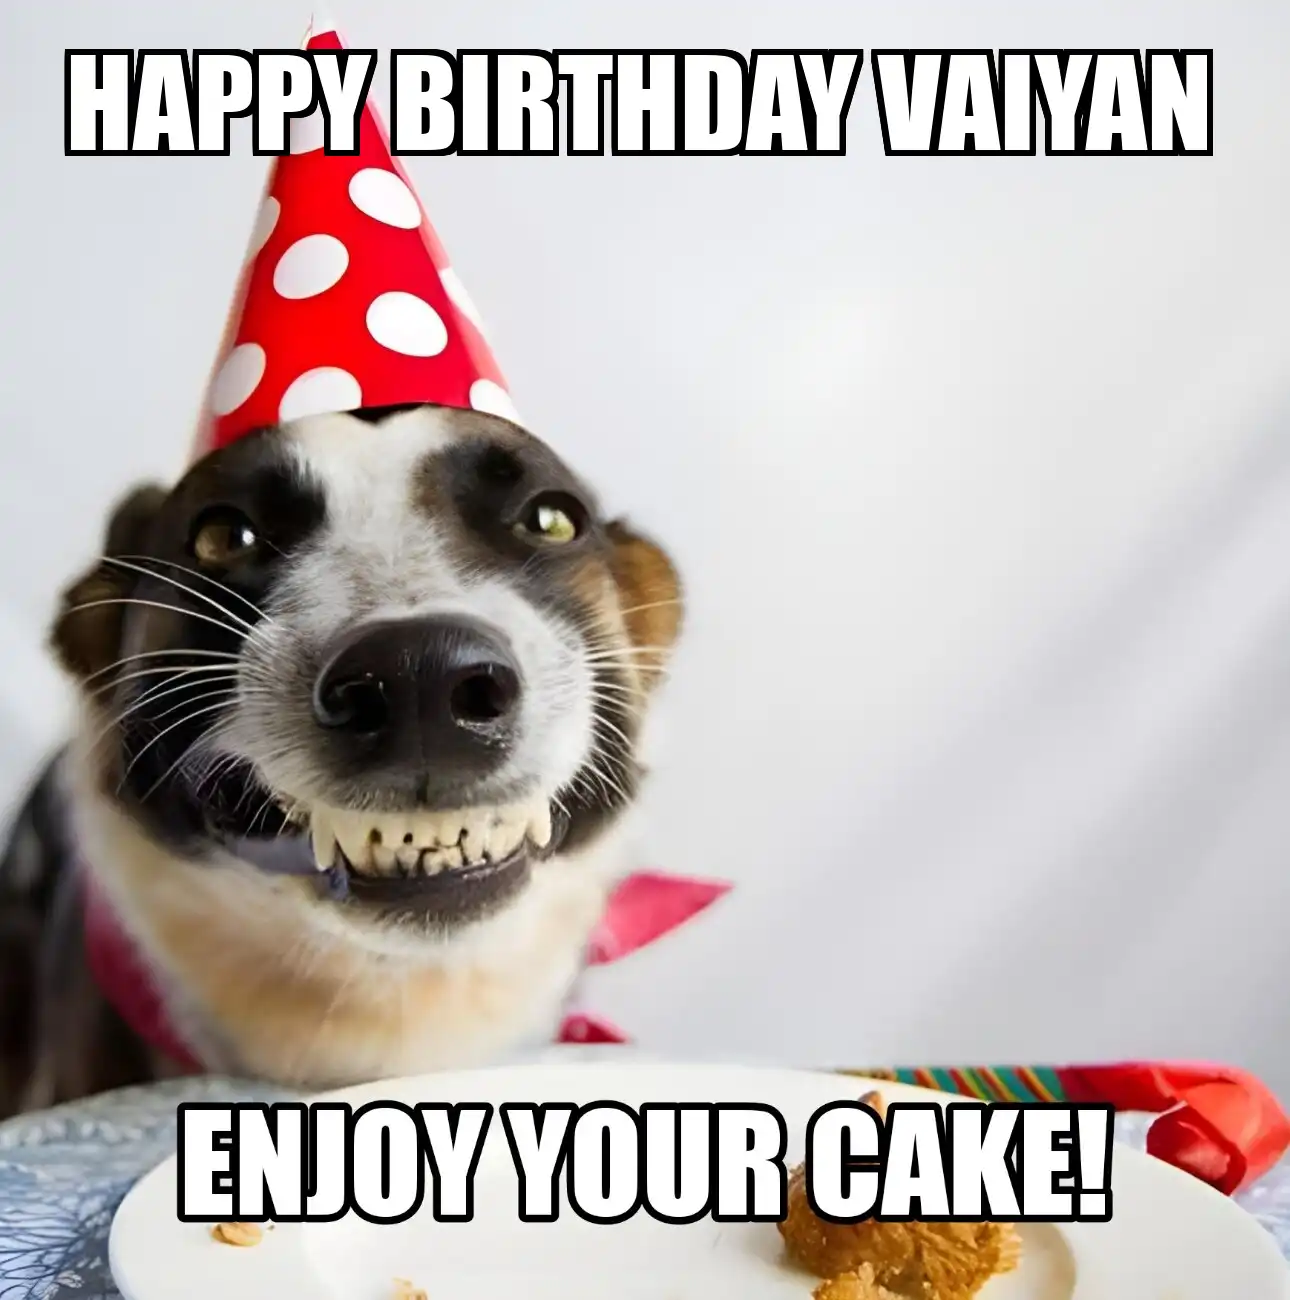 Happy Birthday Vaiyan Enjoy Your Cake Dog Meme